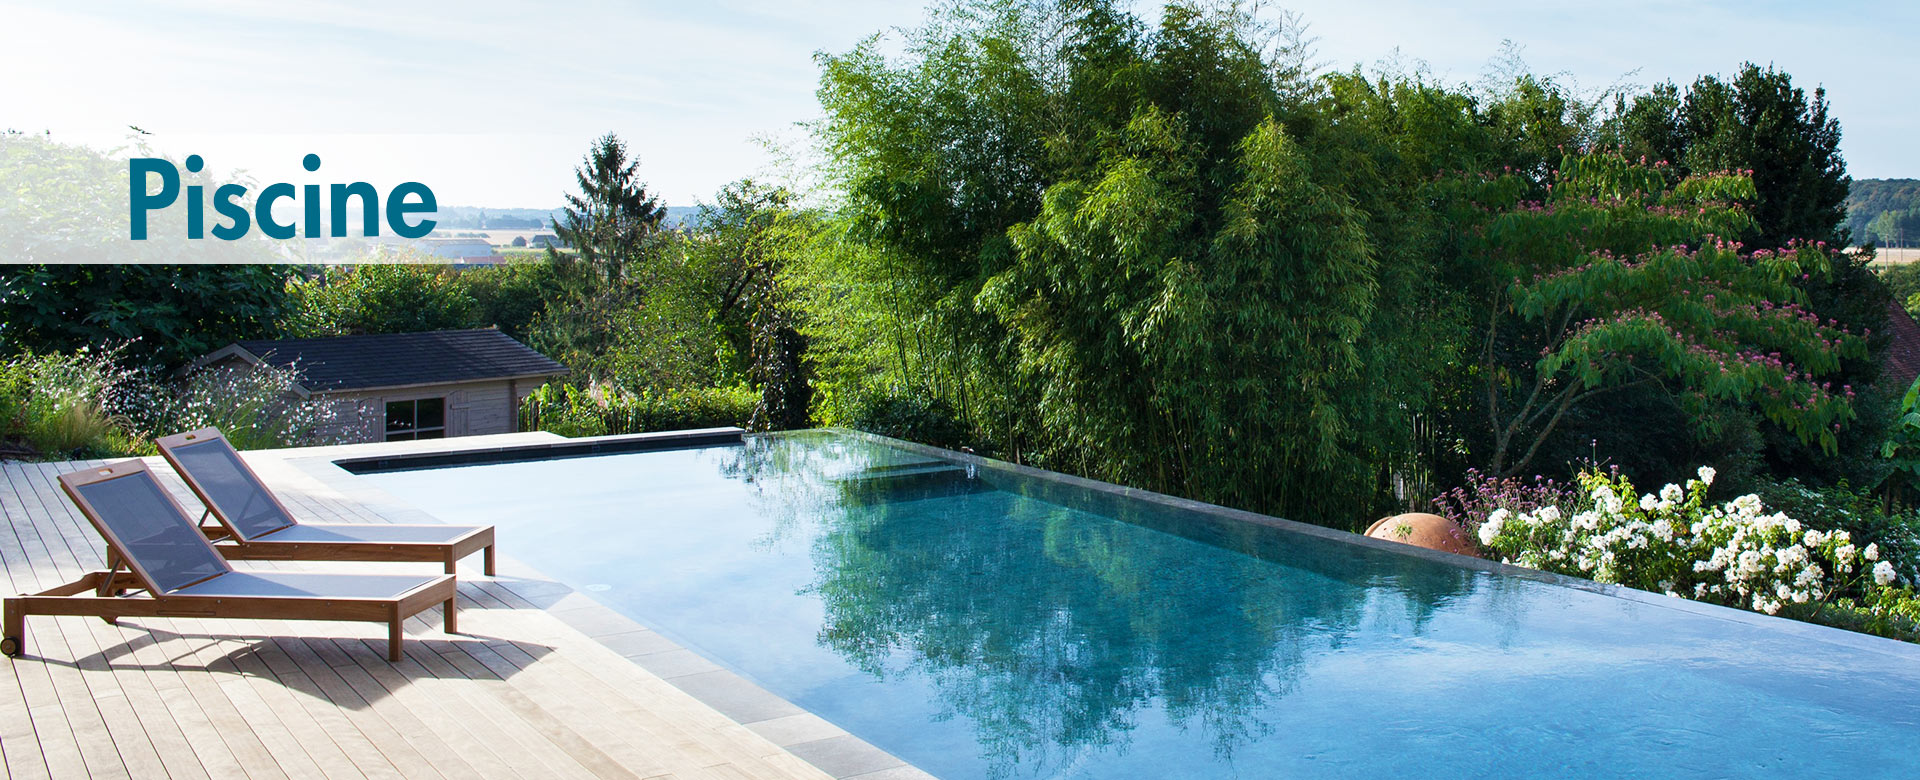 piscine à débordement avec terrasse bois et deux transats en bois et batyline